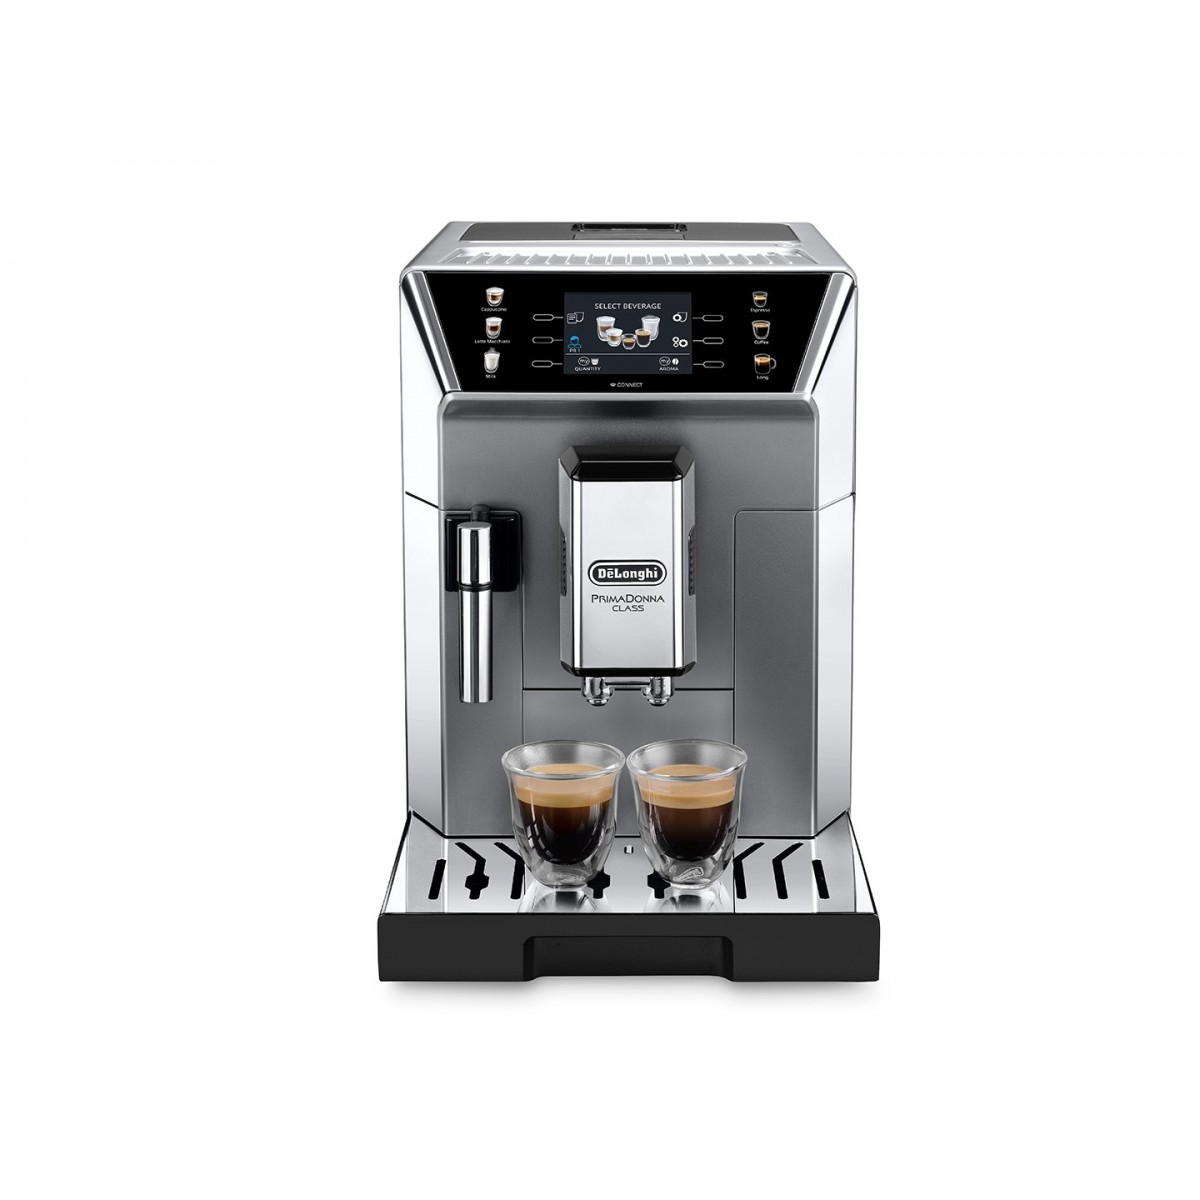 De Longhi PrimaDonna ECAM 550.85.MS - Combi coffee maker - Coffee beans - Built-in grinder - 1450 W - Metallic